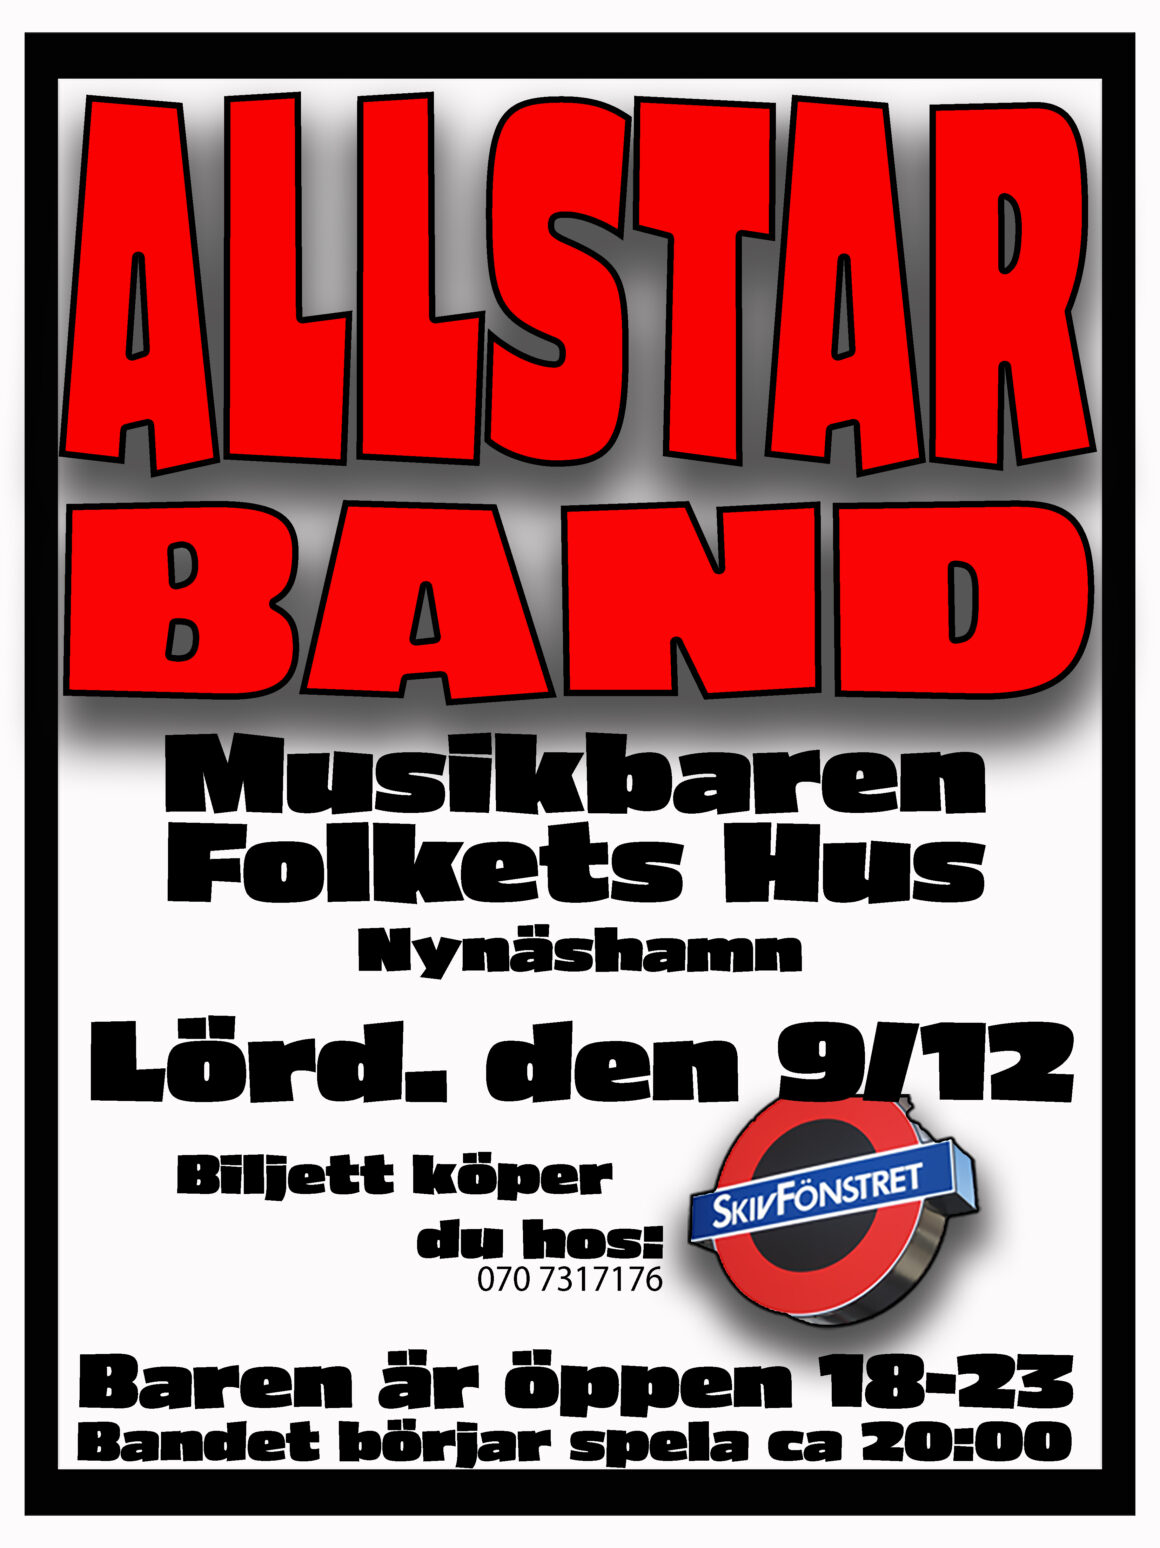 Allstar band